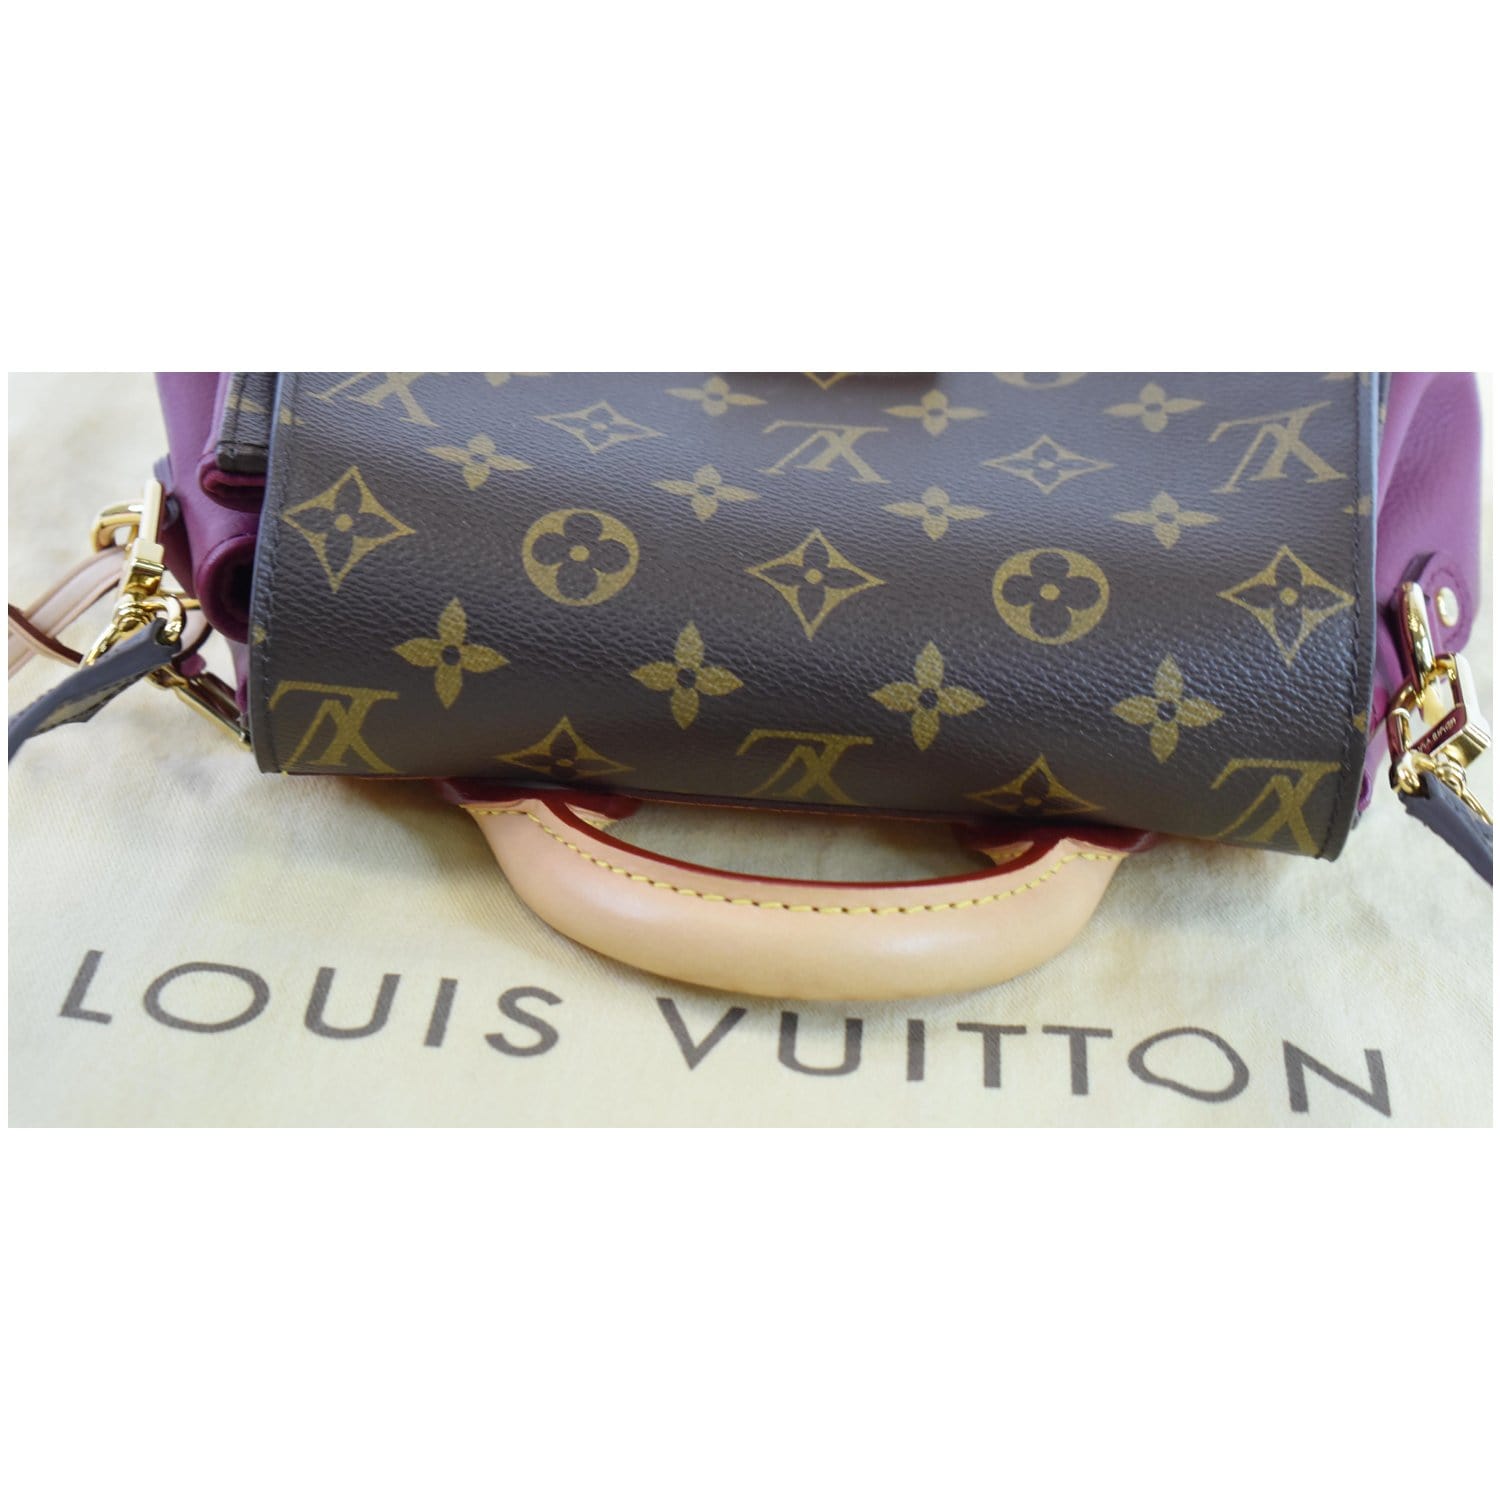 Louis Vuitton Monogram Canvas Eden PM Bag